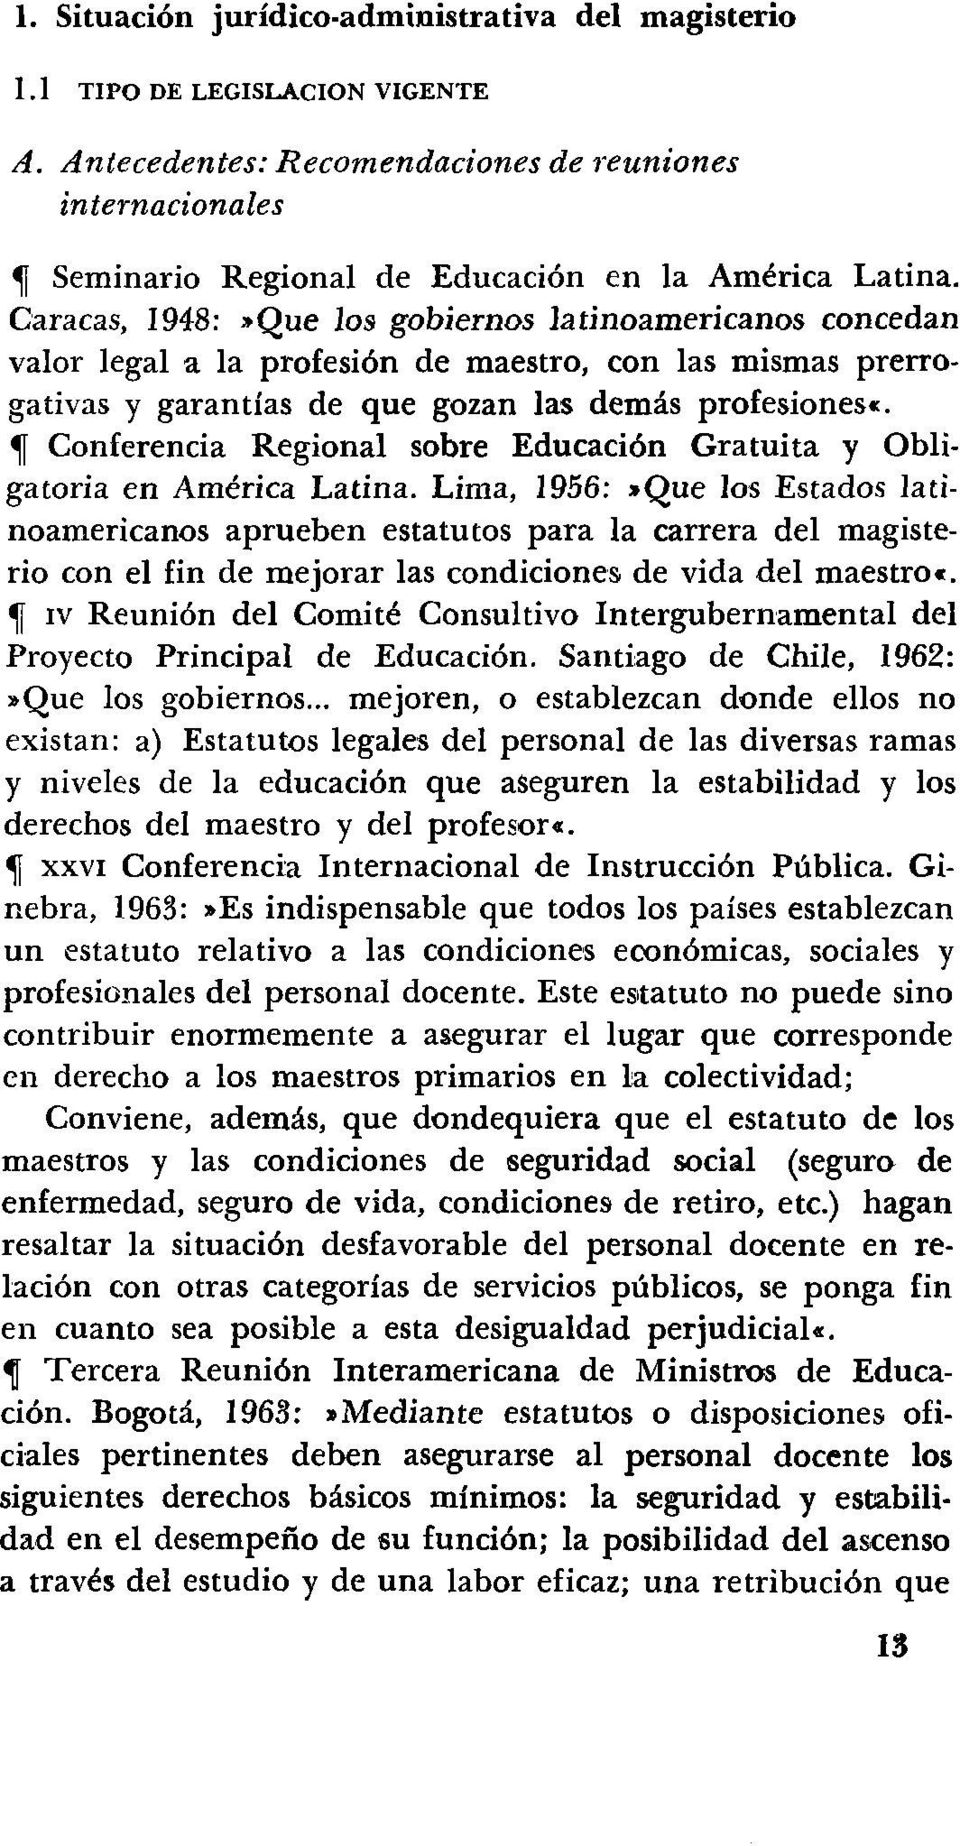 Caracas, 1948:»Que los gobiernos latinoamericanos concedan valor legal a la profesión de maestro, con las mismas prerrogativas y garantías de que gozan las demás profesiones«.